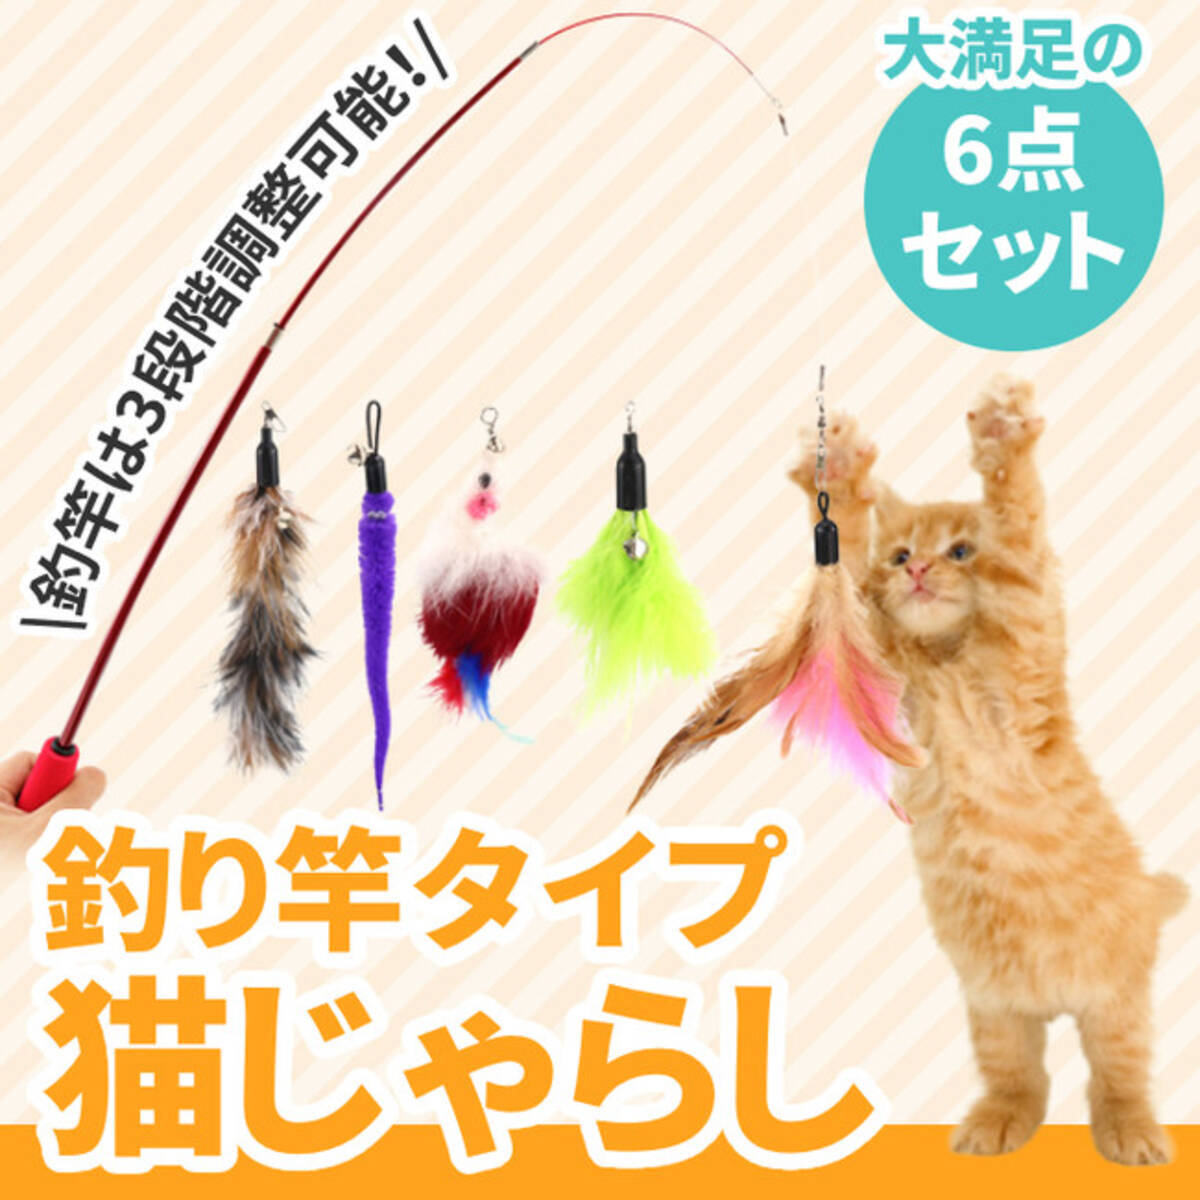 大満足の6点セット！「猫 おもちゃ ねこじゃらし 釣り竿」が販売開始します。 (2022年5月14日) - エキサイトニュース